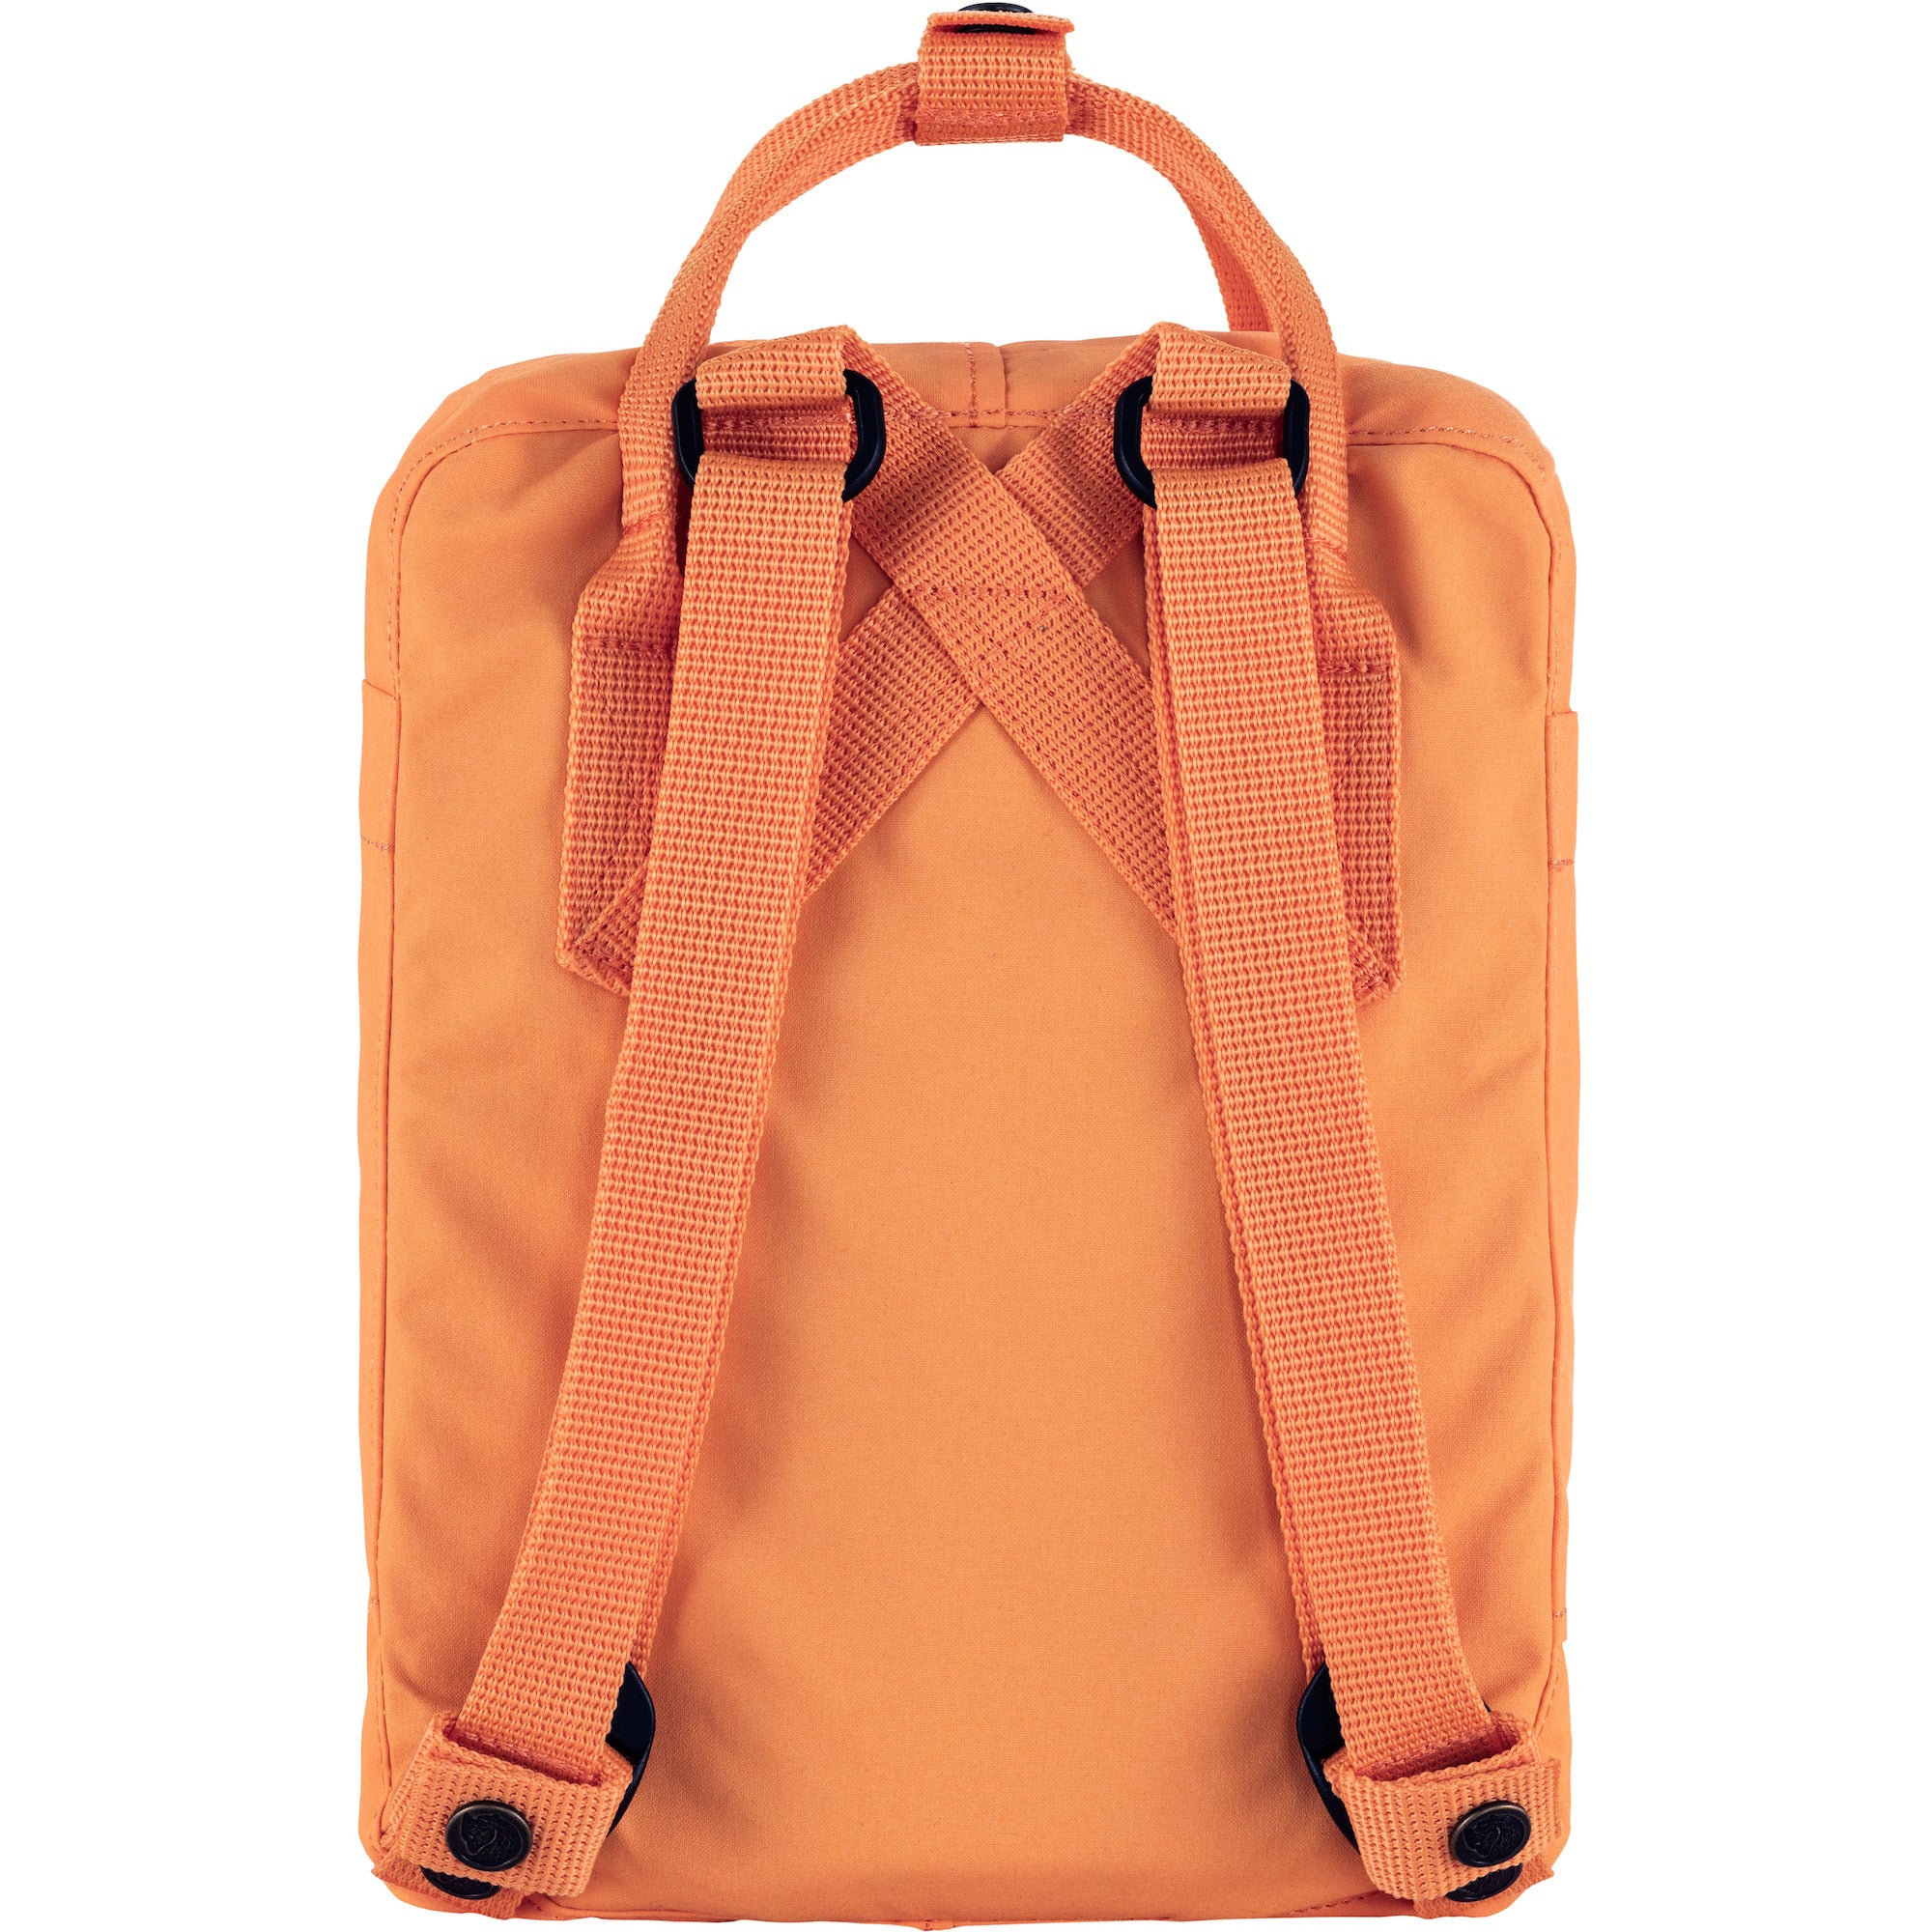 Fjallraven Kanken Mini Backpack - Sunstone Orange